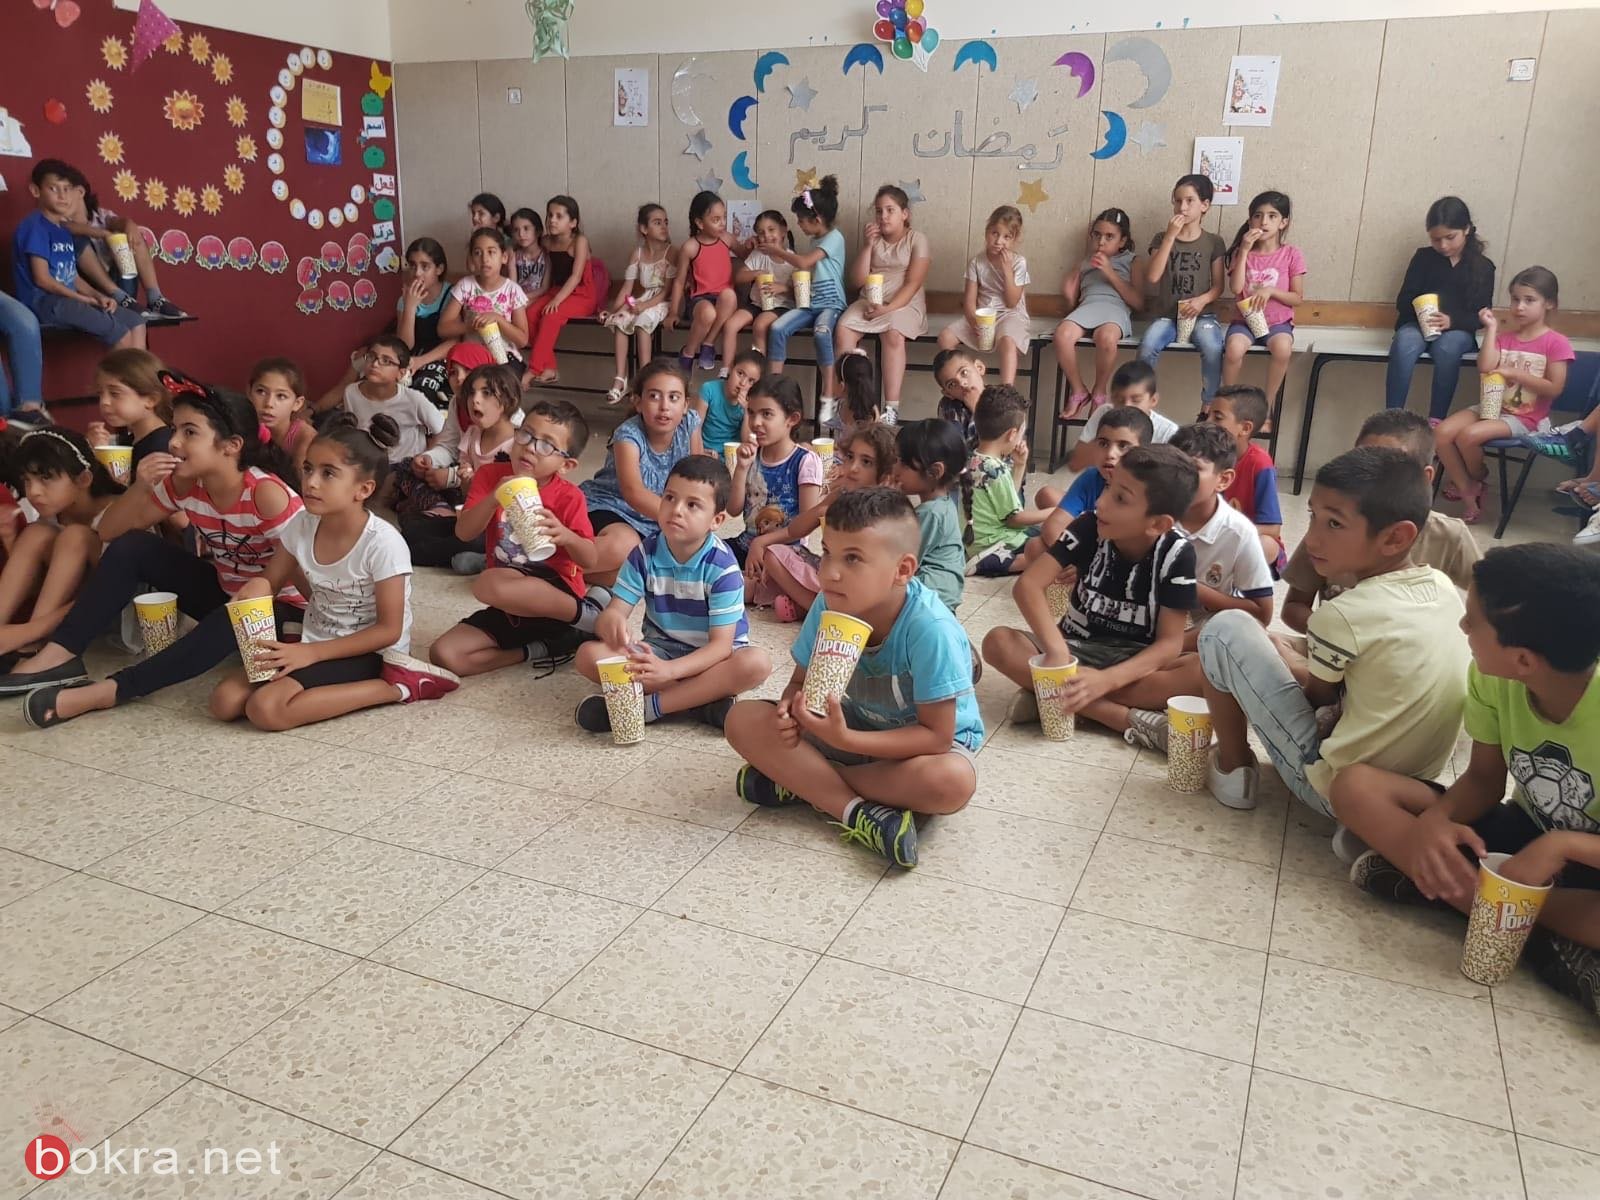 زخم غير مسبوق في مخيم مدارس العطلة الصيفية في شفاعمرو تحت عنوان "الإبحار مع القصة"-8